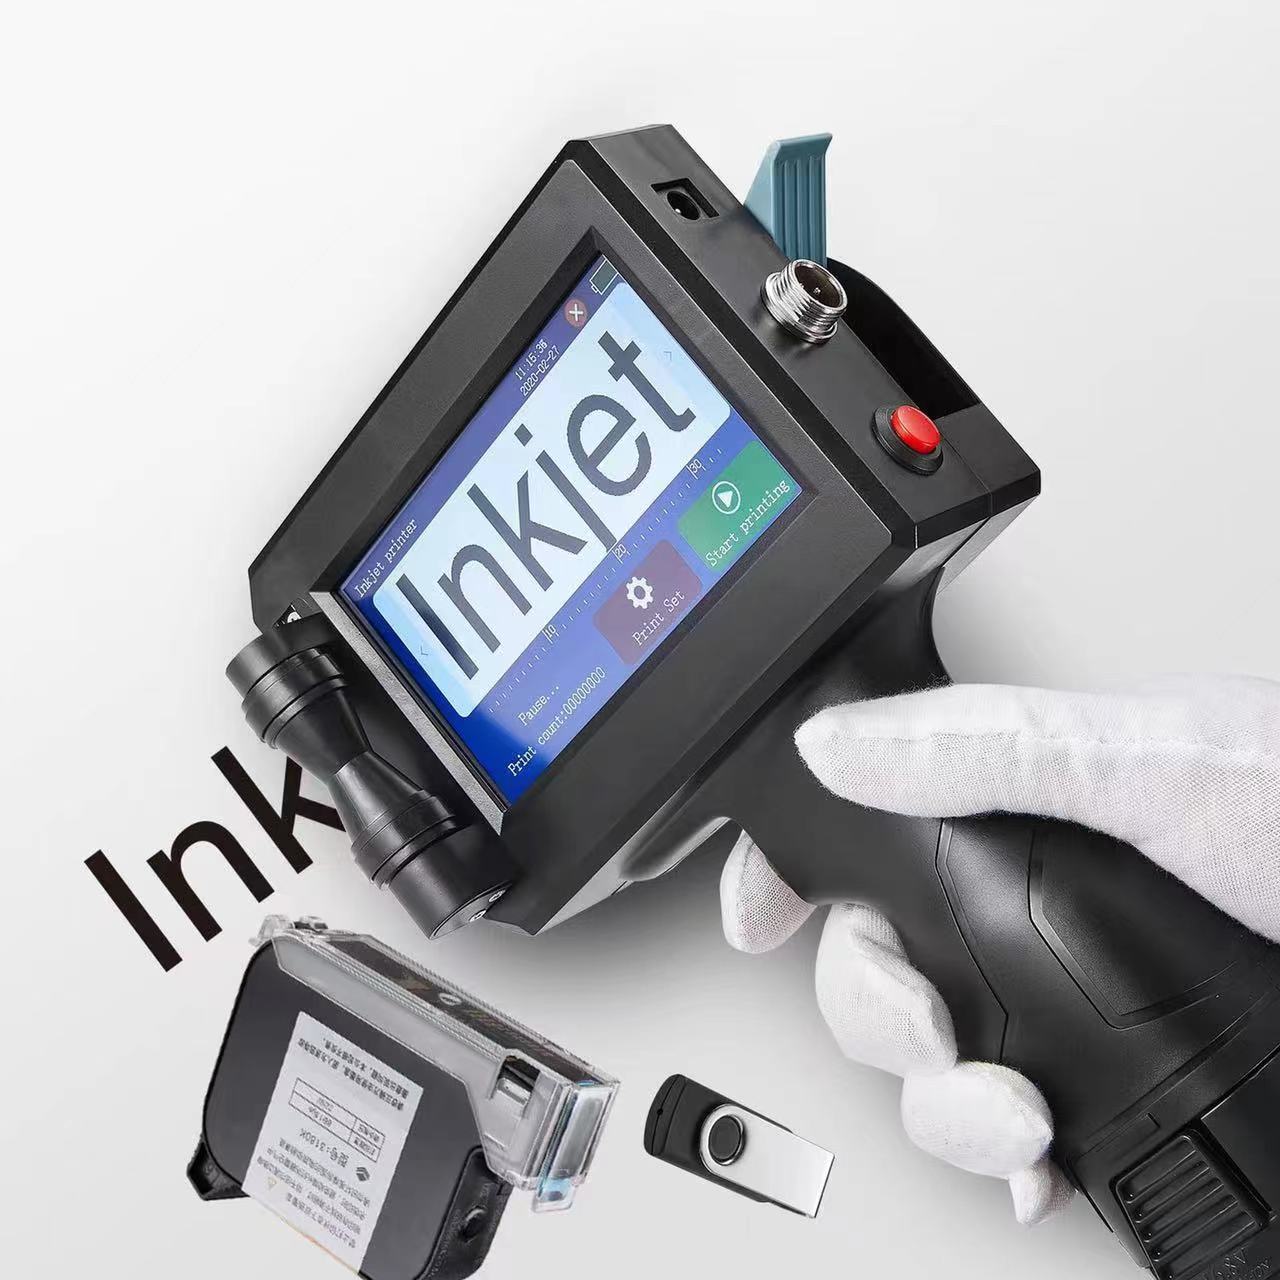 Codificadora impresora inkjet tinta o$329000 portatil manual pi